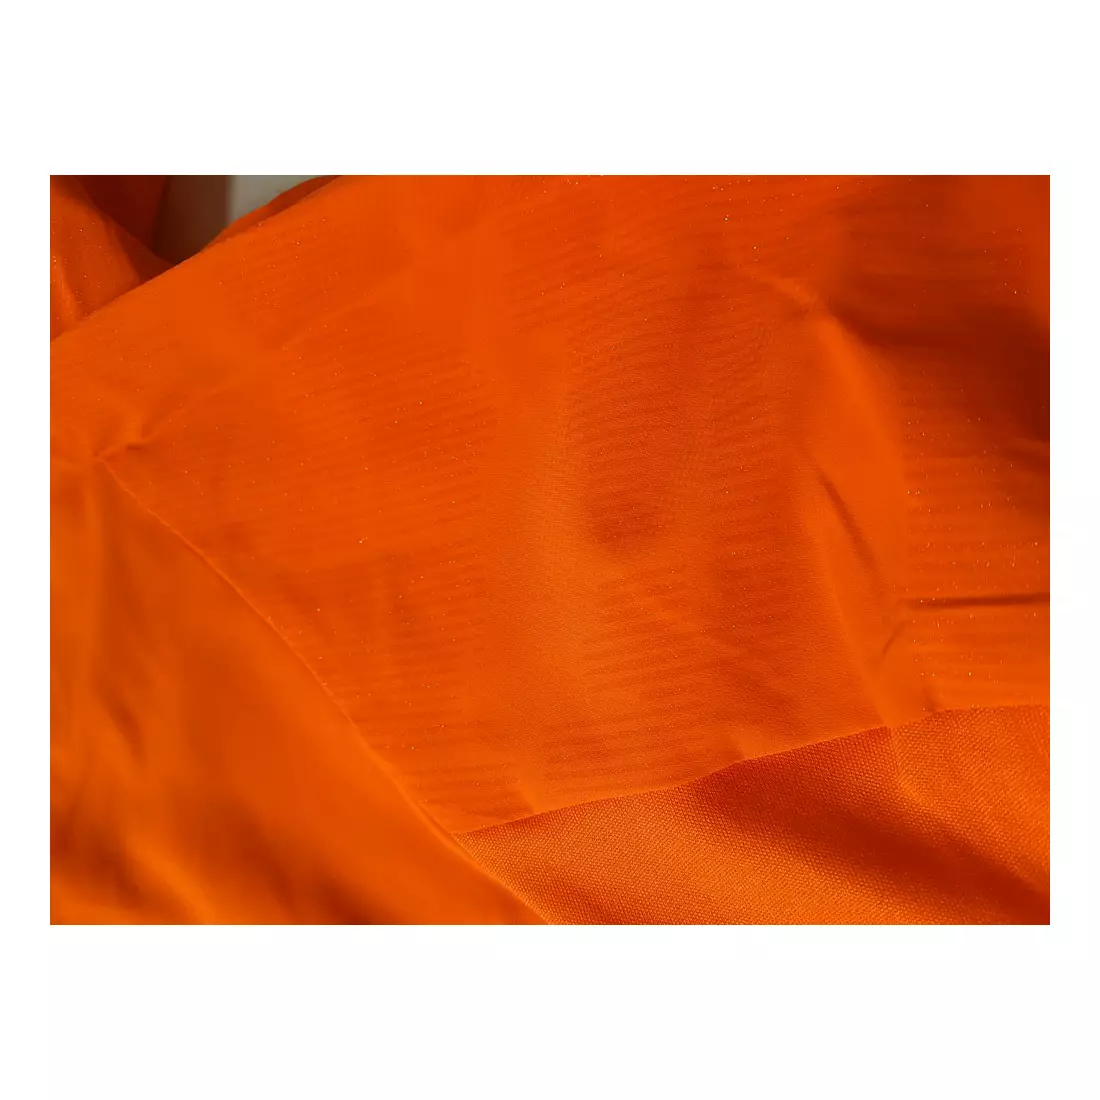 Ľahká bežecká bunda CRAFT URBAN, oranžová 1906447-575999